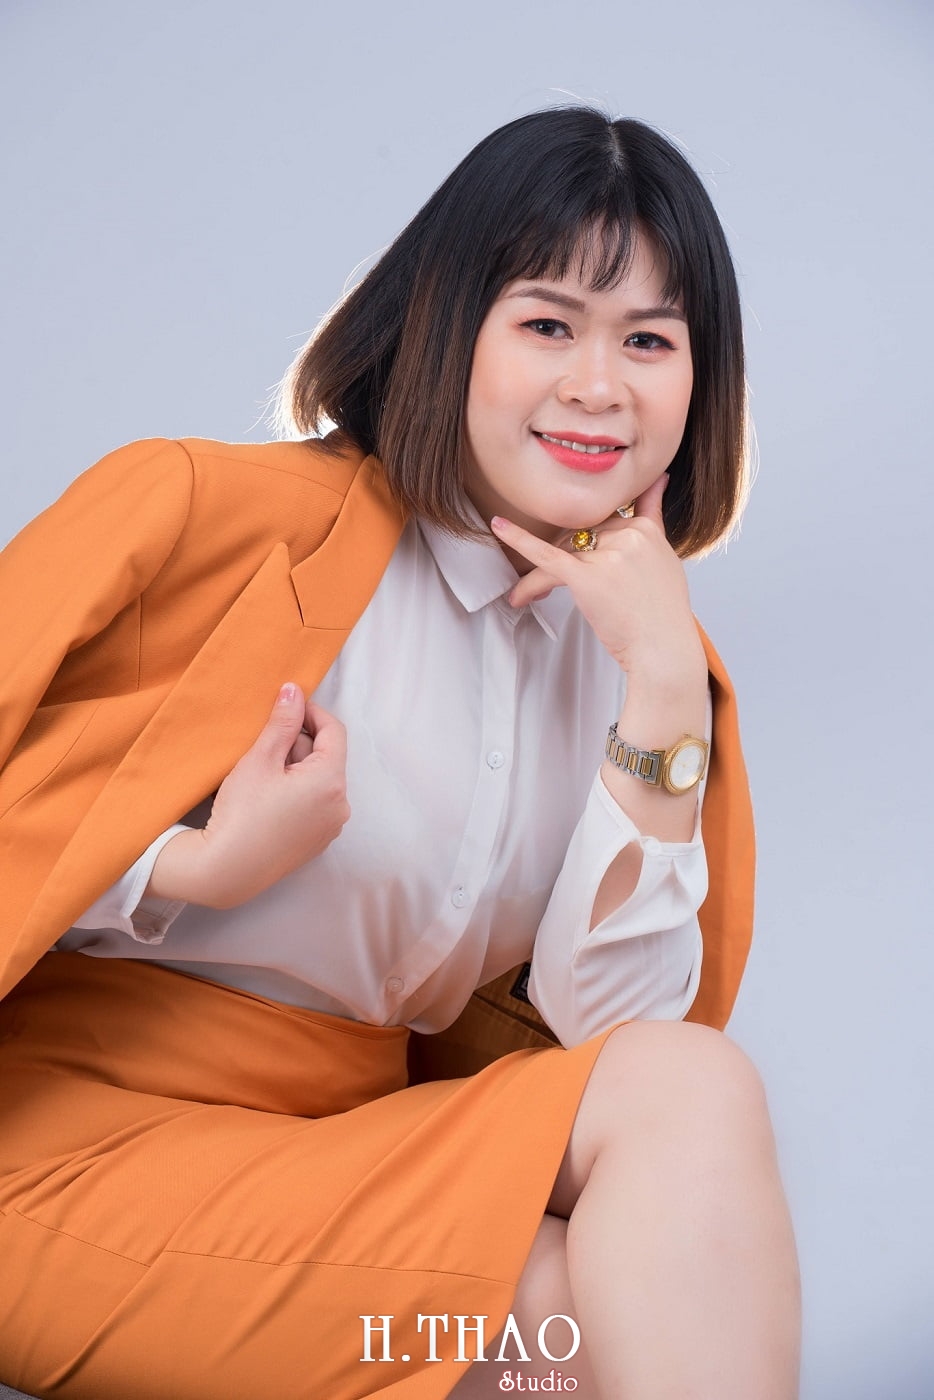 Chi Hoa 10 - Album ảnh profile cá nhân chị Hòa đẹp – HThao Studio